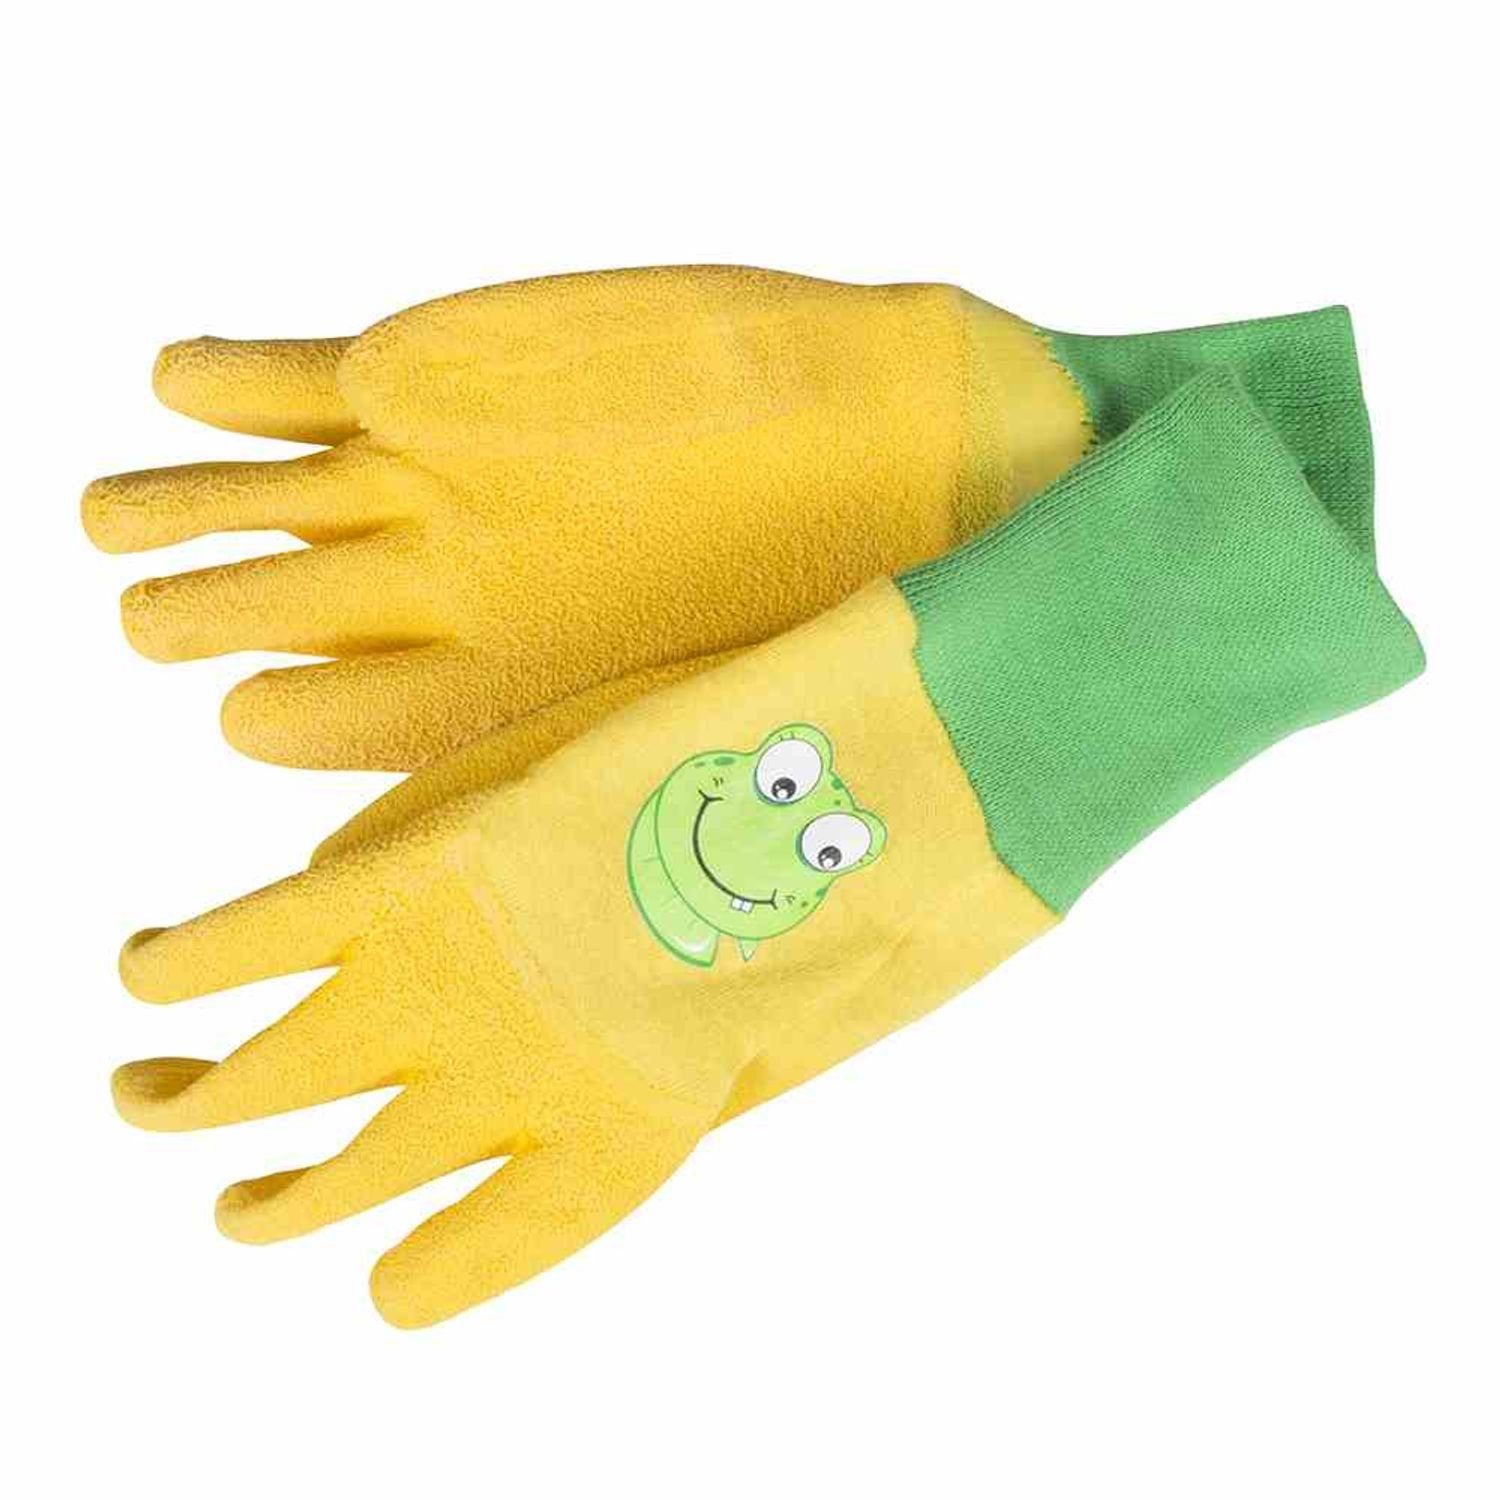 Gebol Gartenhandschuhe Kinderhandschuh Froggy, Größe 5 Material: Baumwolle und Latex